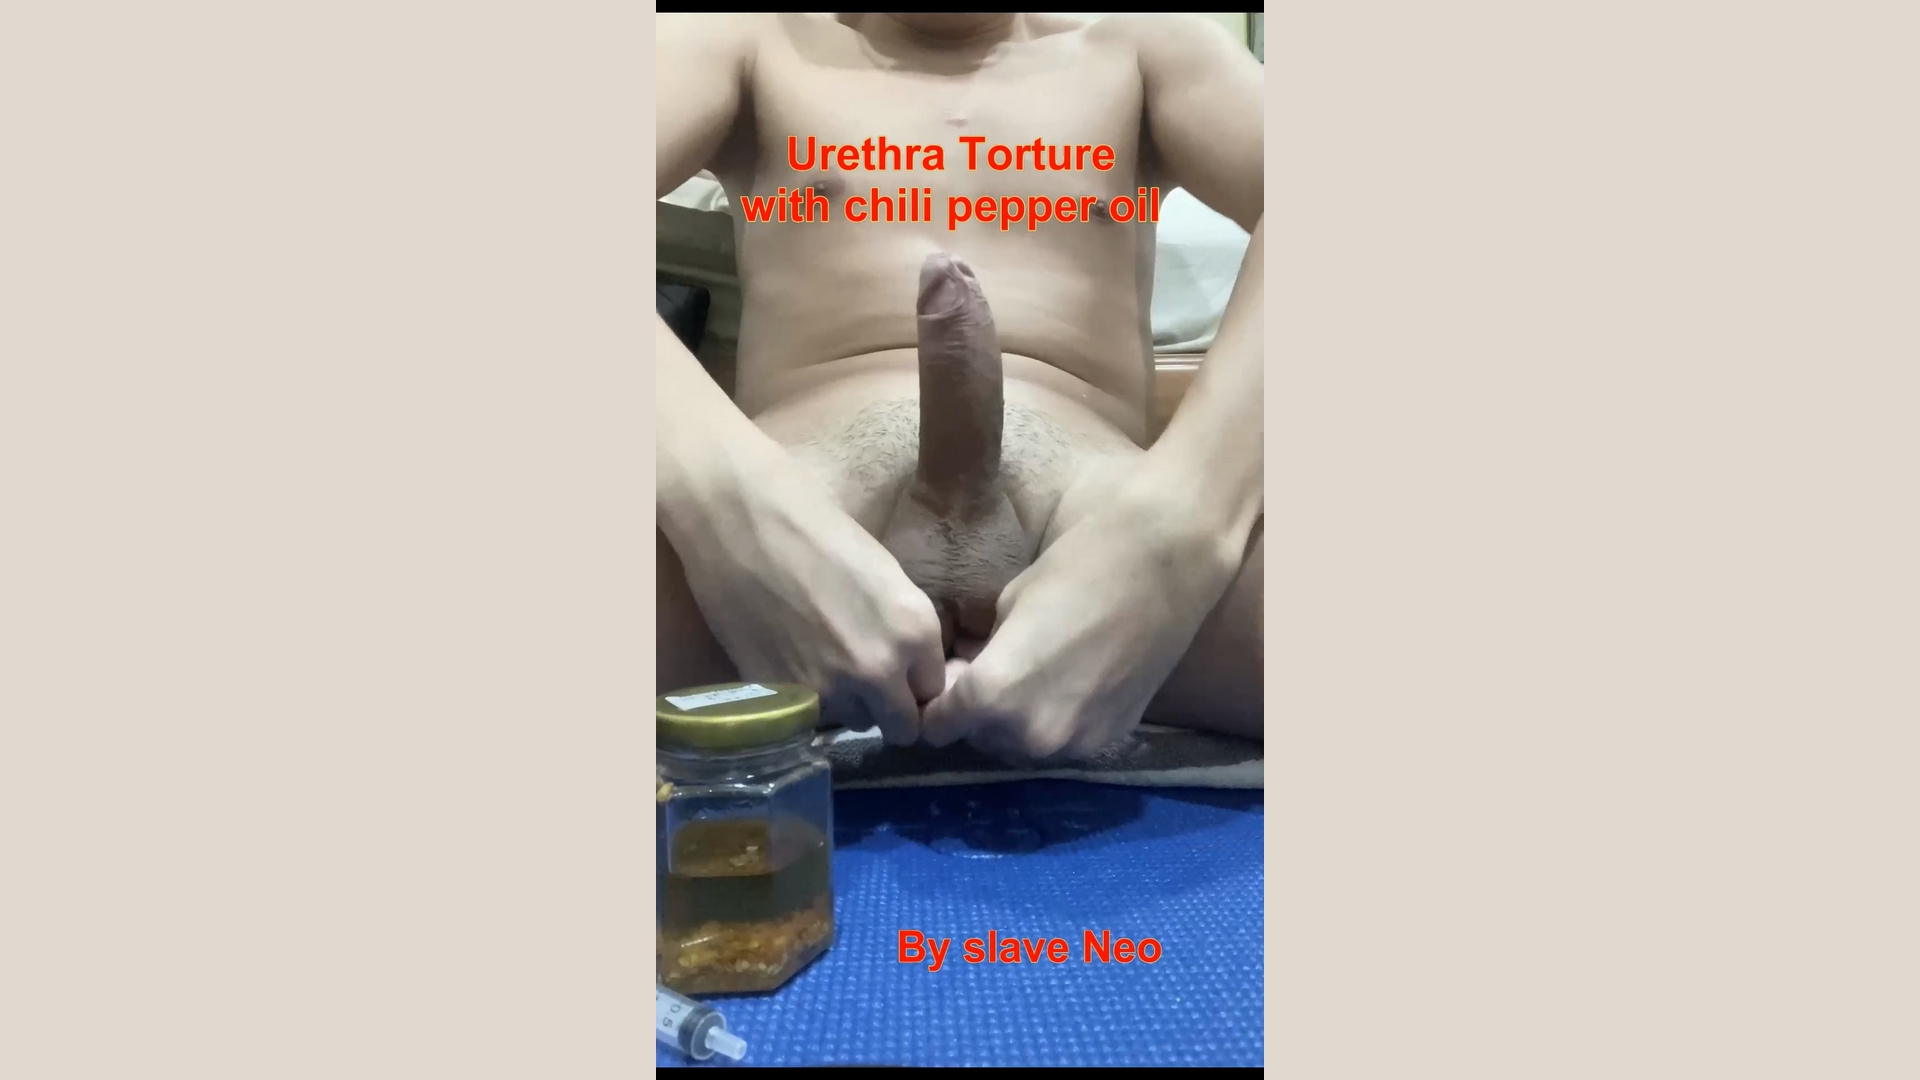 Chili pepper oil in slave Neo's urethra